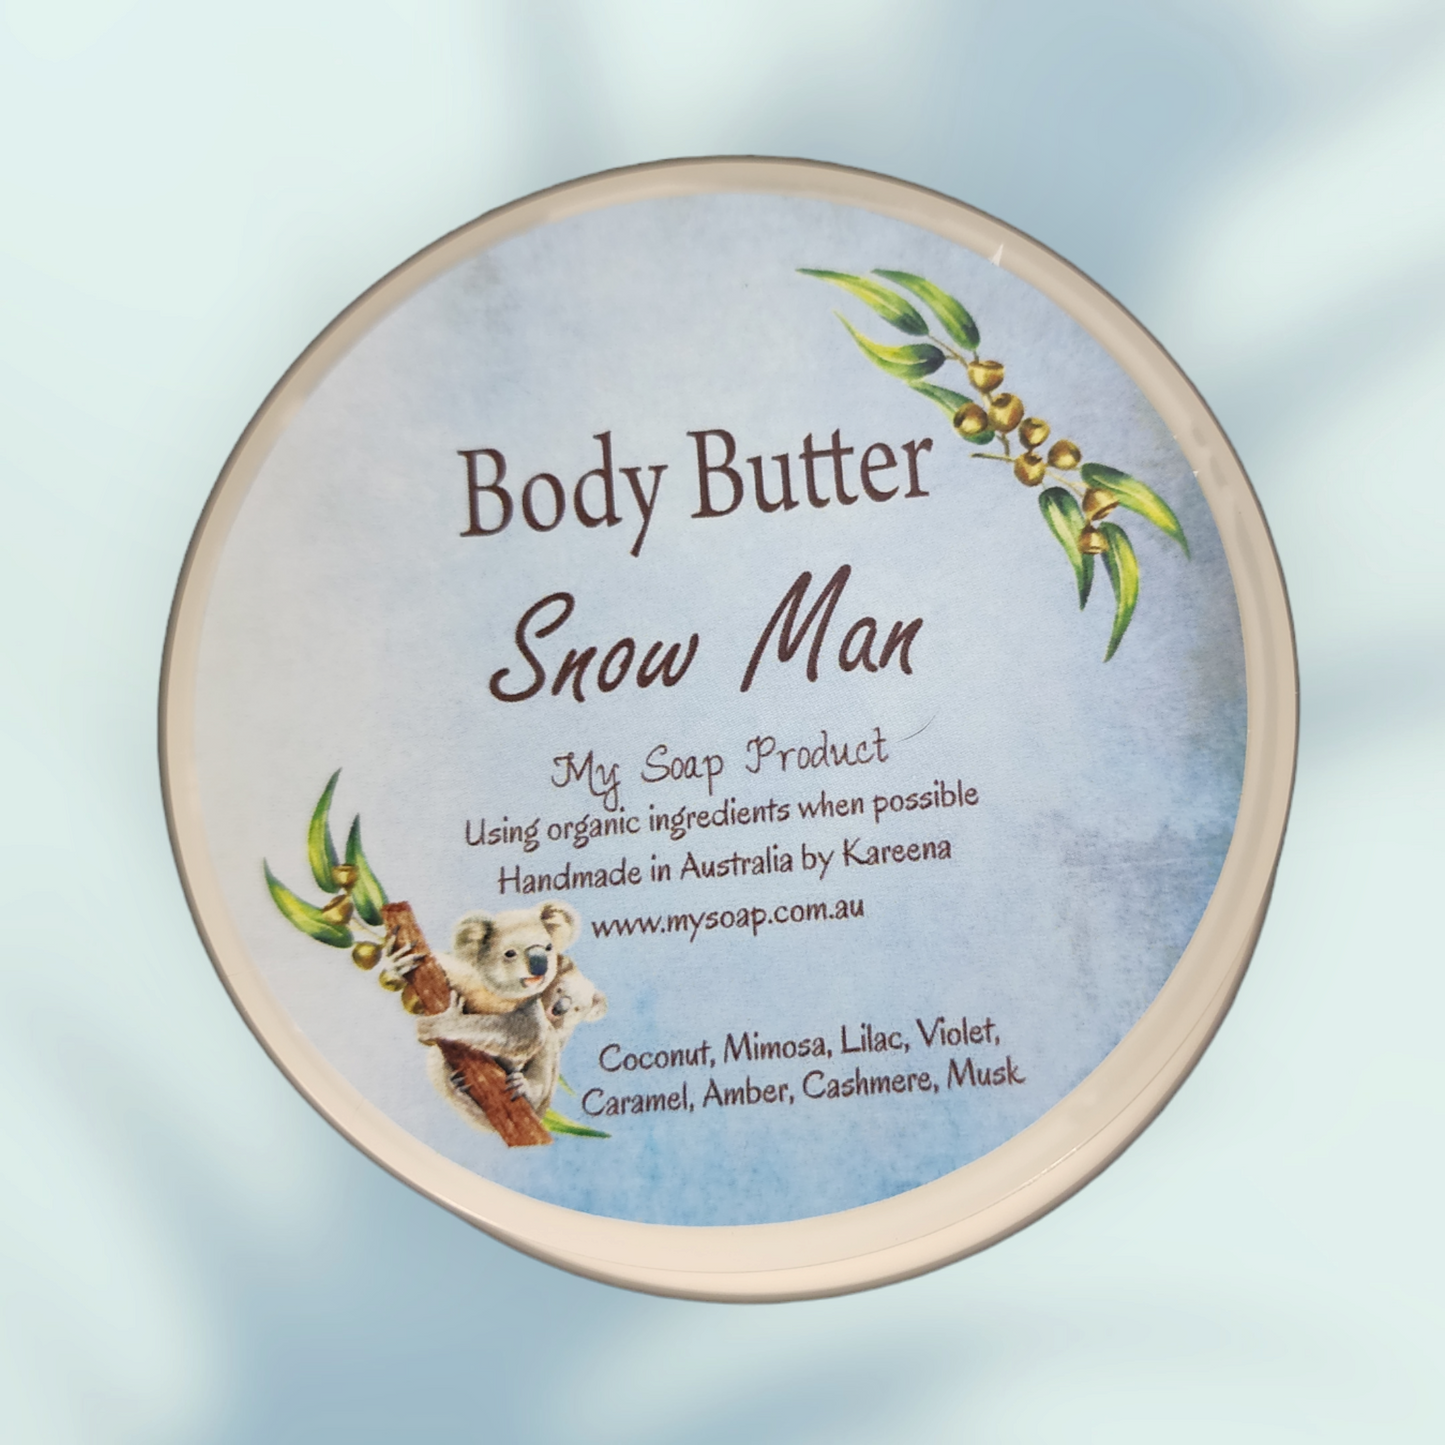 Snow man Body Butter